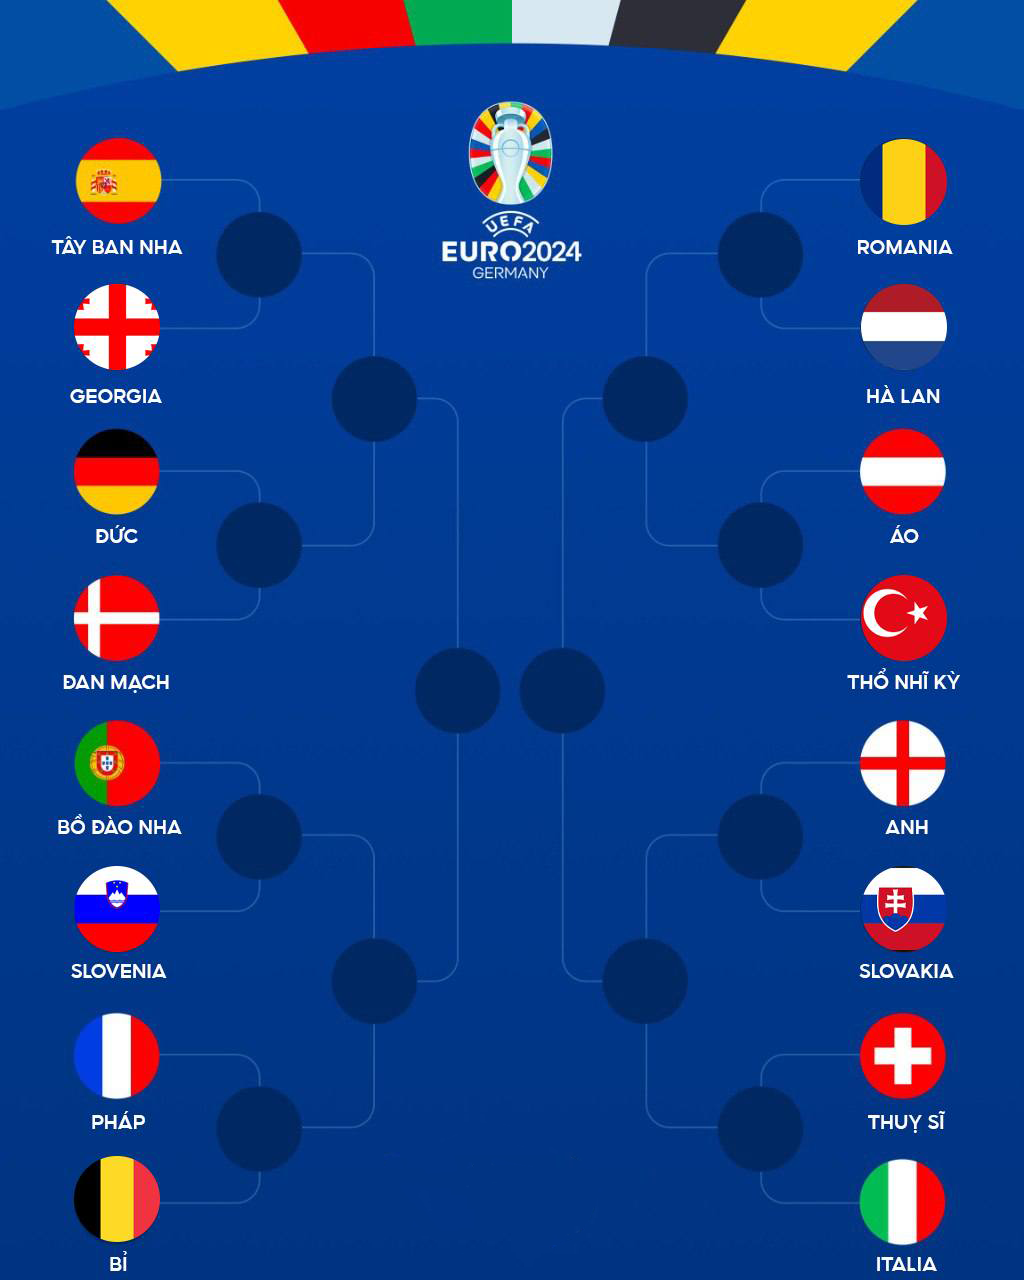  Kết quả phân nhánh vòng 1/8 EURO 2024 sau khi xác định được 16 đội tuyển vượt qua vòng bảng.